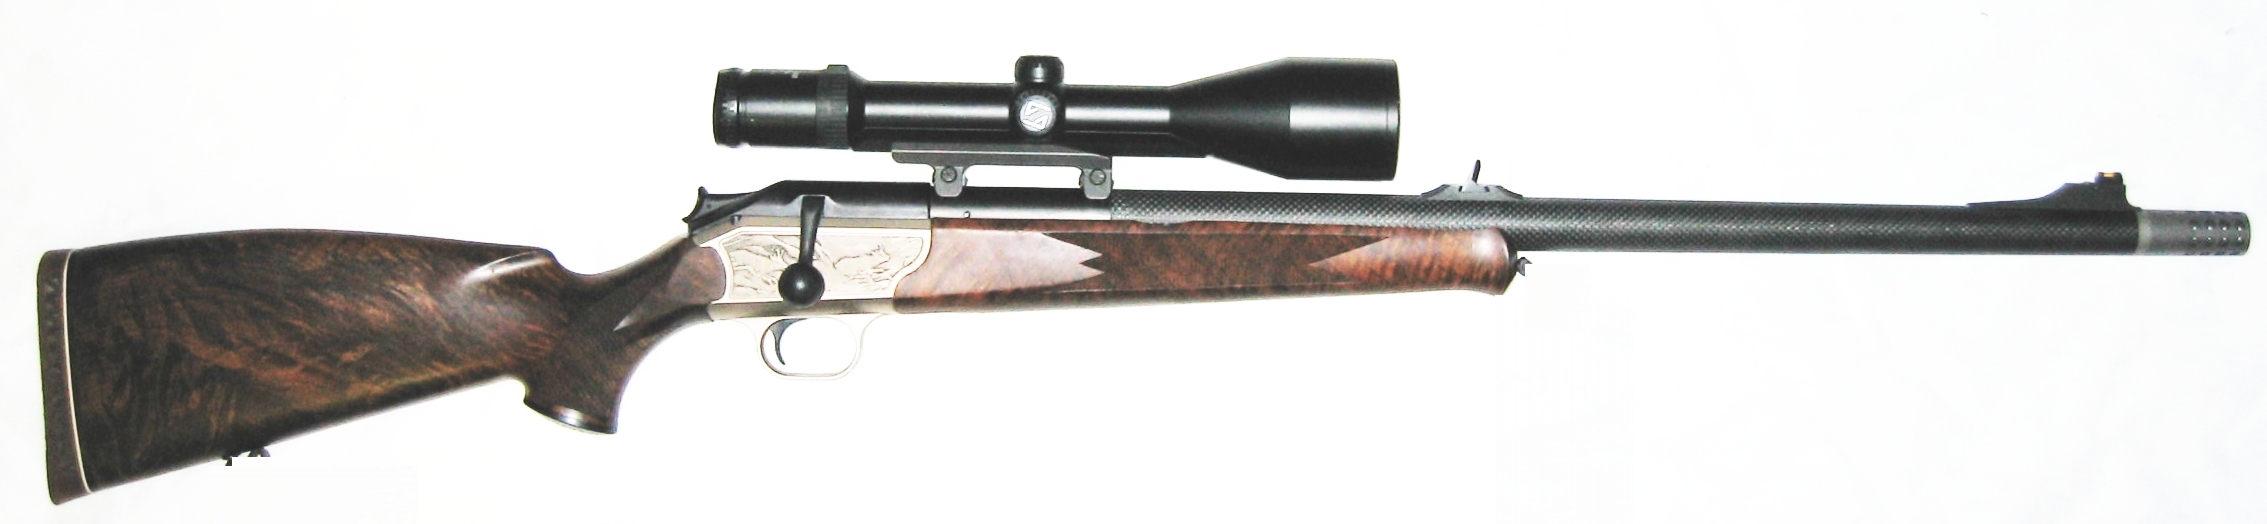 Blaser R93 Sesvenna mit Luxus-Schaft im Kaliber .416 Remington Magnum mit Carbon-Lauf inkl. Mündungsbremse.